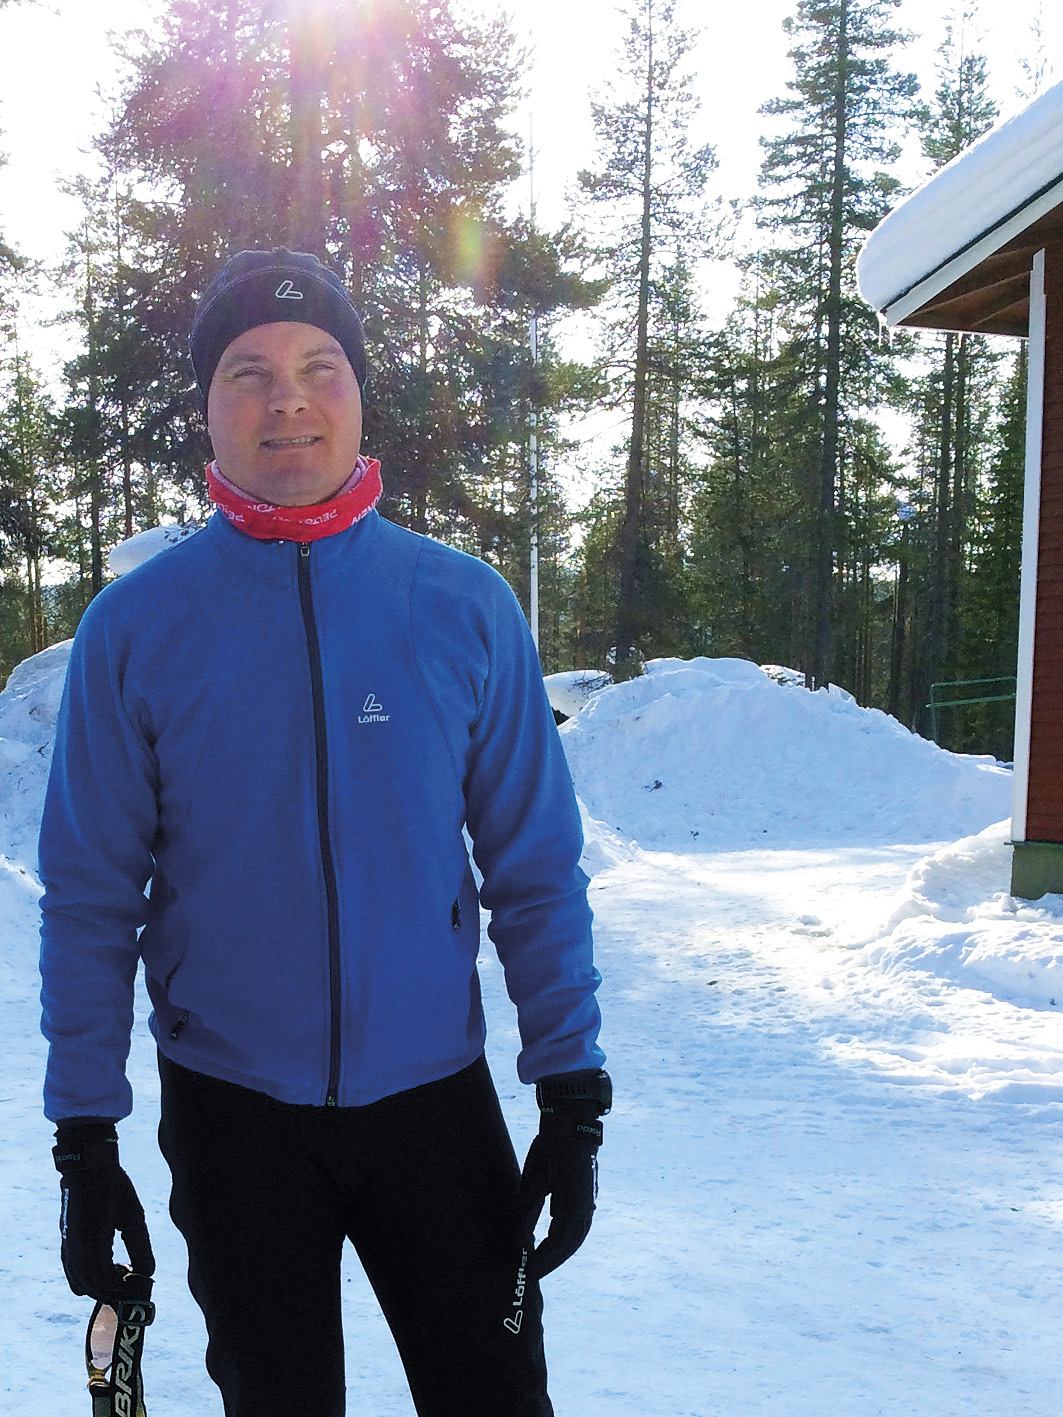 PUHEENJOHTAJAN KATSAUS TOIMINTAVUOTEEN 2014 Syksyllä 2014 tuli kuluneeksi 60 vuotta siitä, kun ammatillisen koulutuksen oma hiihtomaja valmistui Kuertunturin rinteeseen Äkäslompoloon.